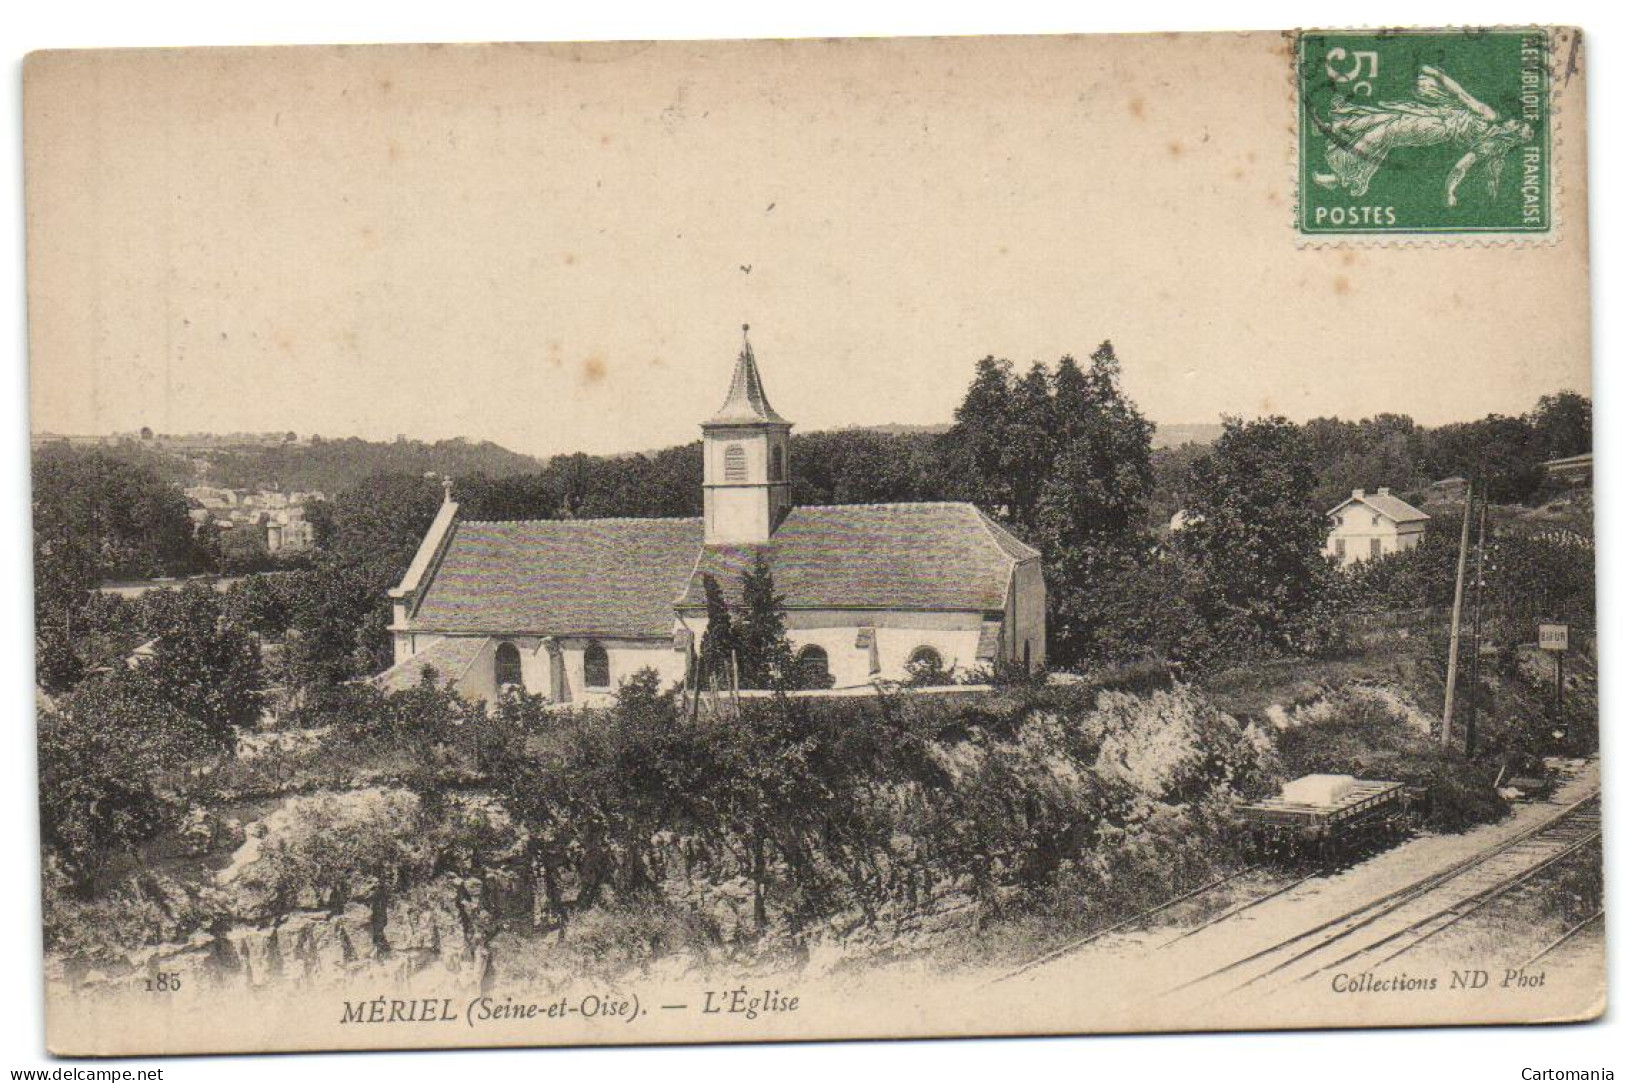 Mériel (Seine-et-Oise) - L'Eglise - Meriel